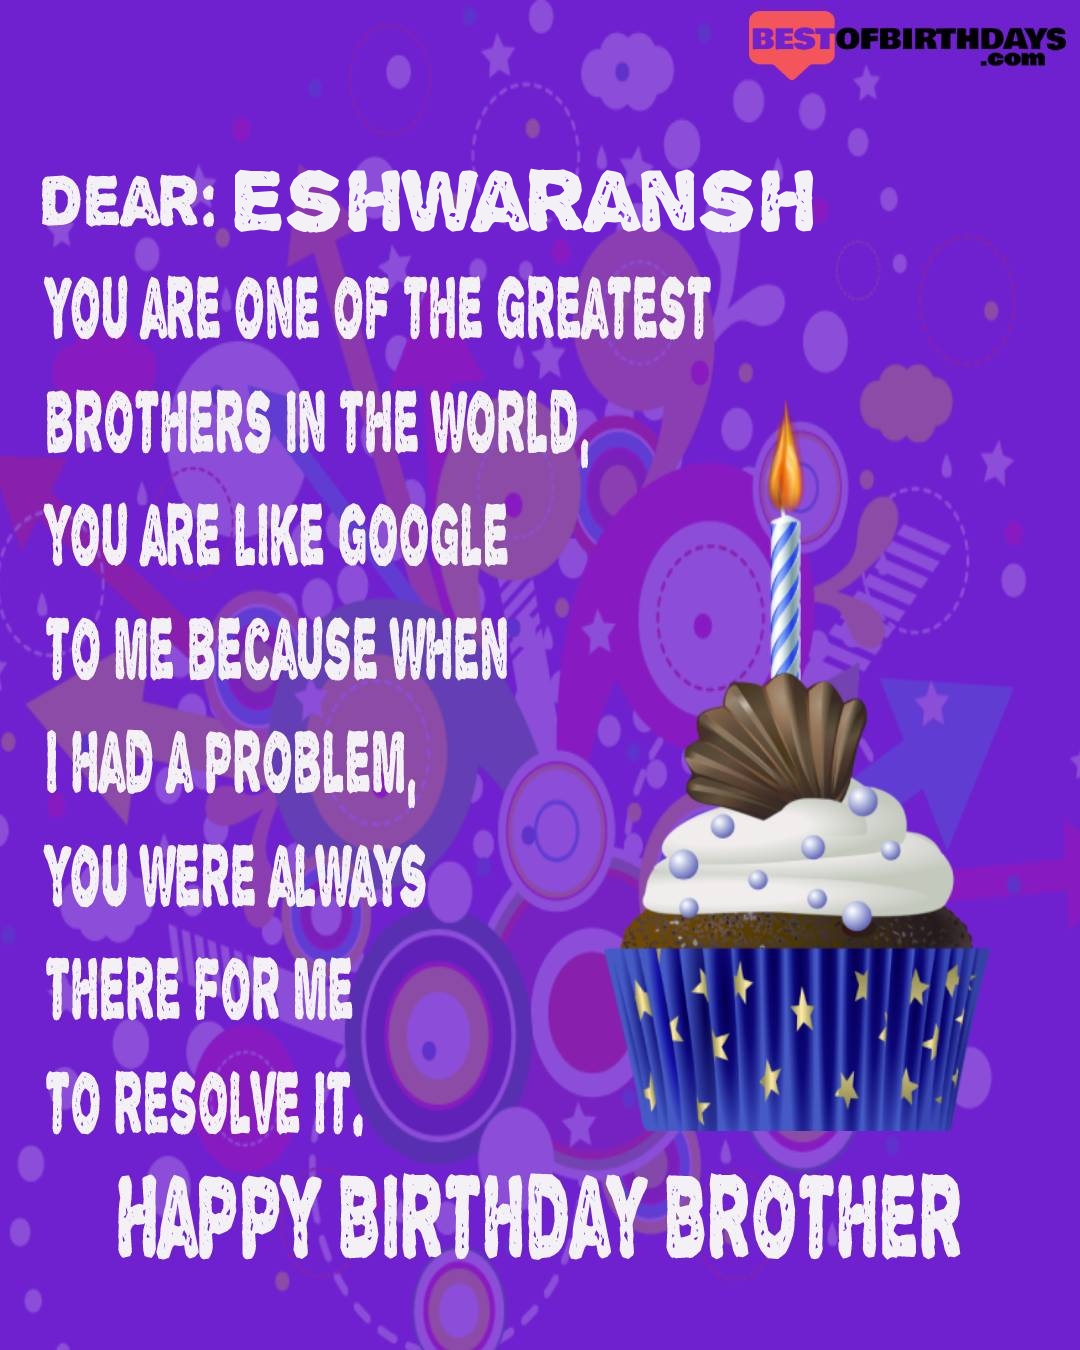 Happy birthday eshwaransh bhai brother bro